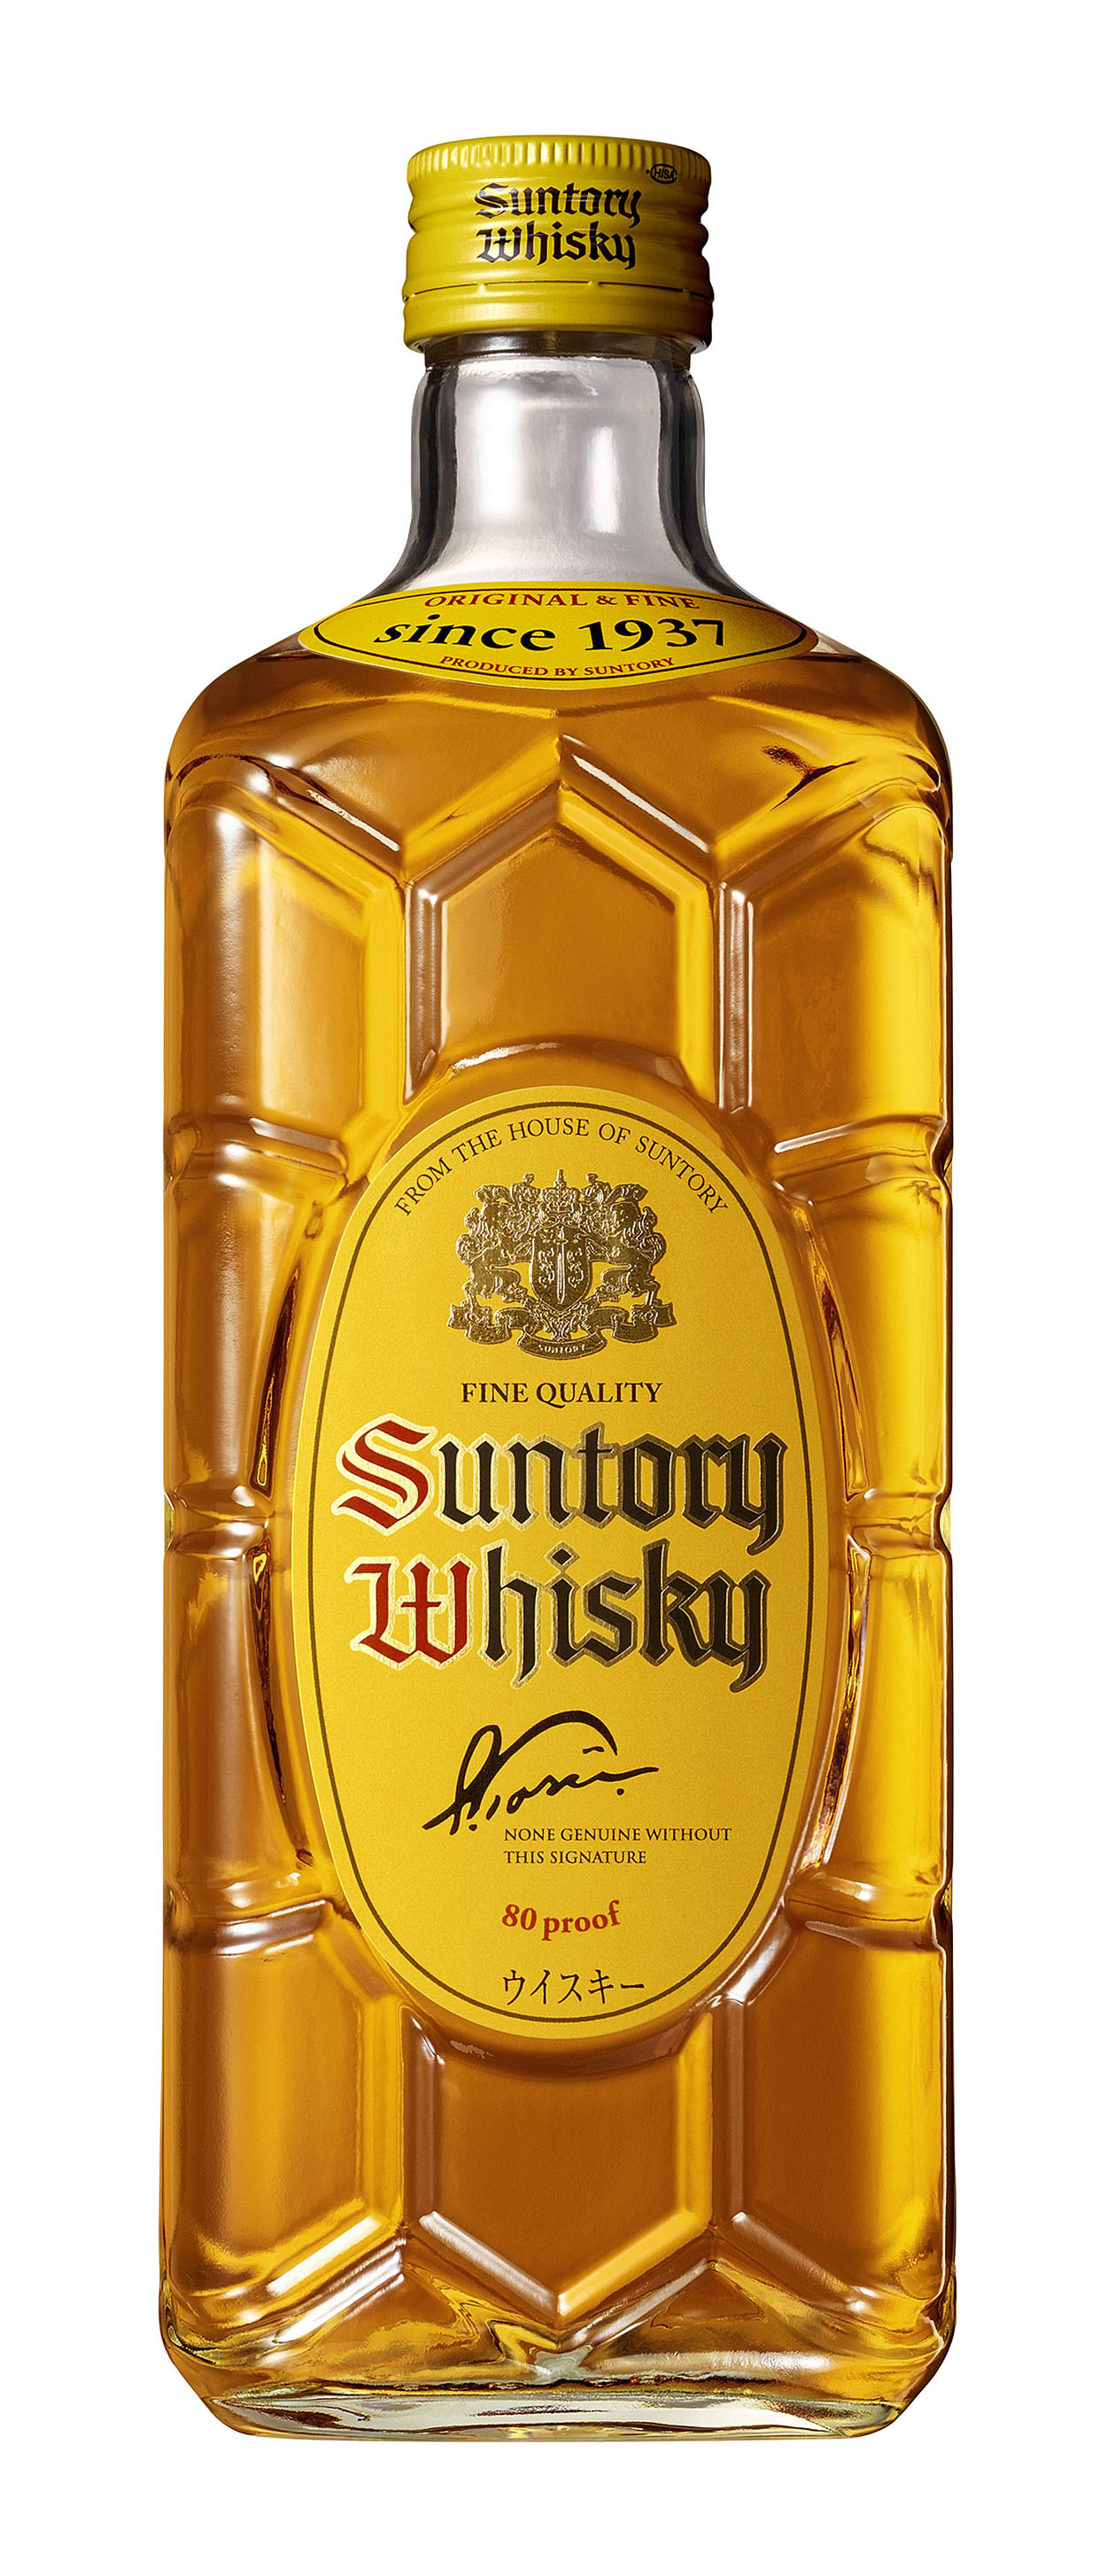 ウイスキー「角瓶」７年ぶり値上げ サントリー、原酒貯蔵増設 - 産経 